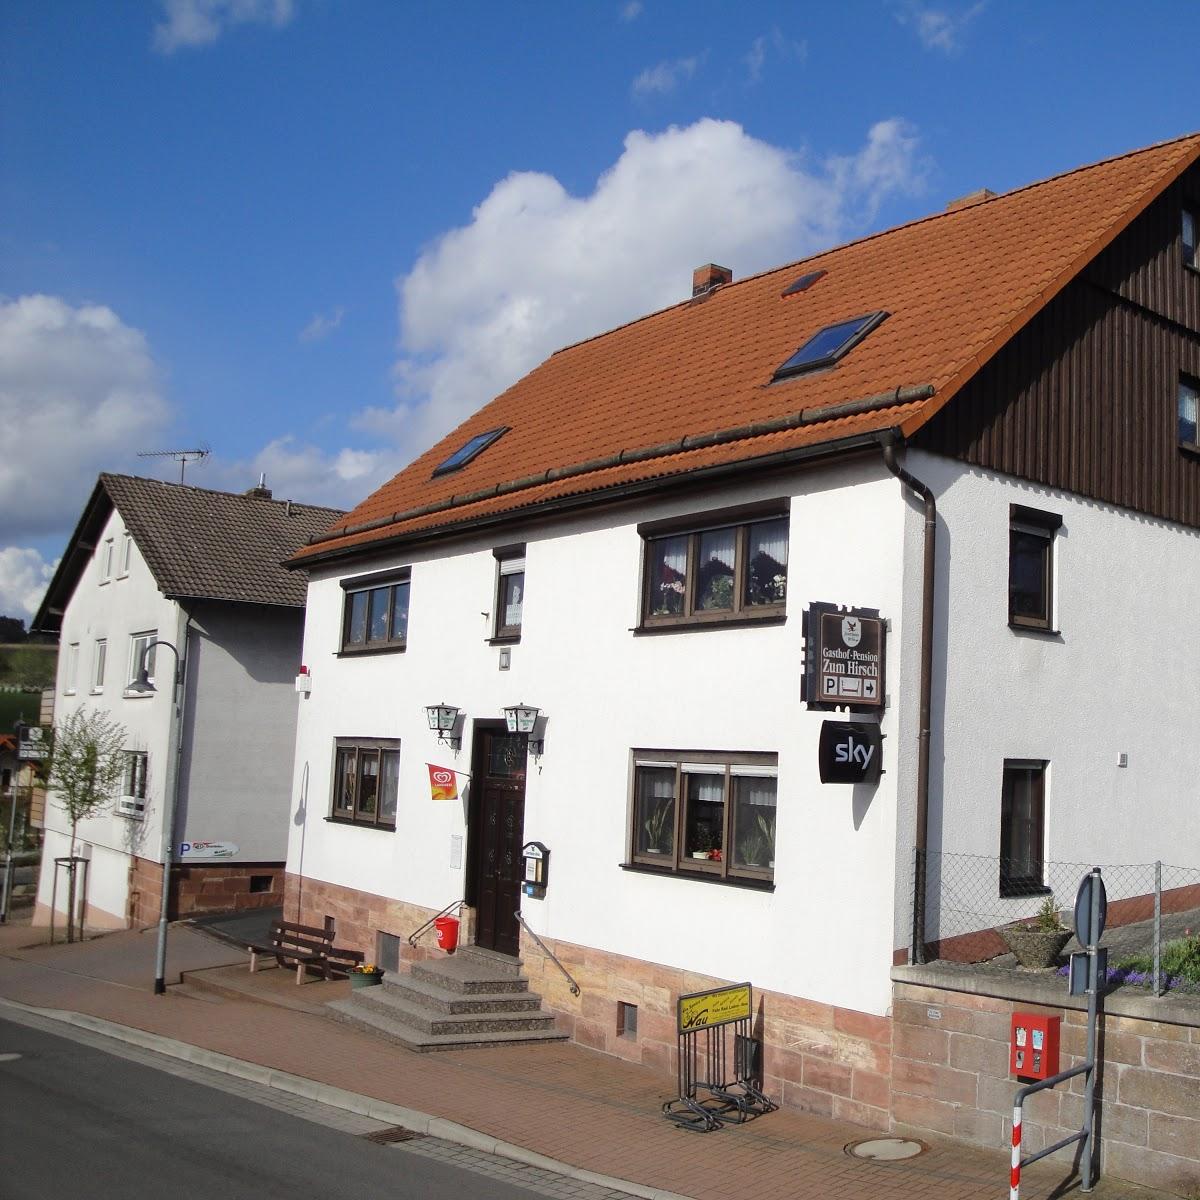 Restaurant "Gasthaus-Pension Zum Hirsch" in Hünfeld